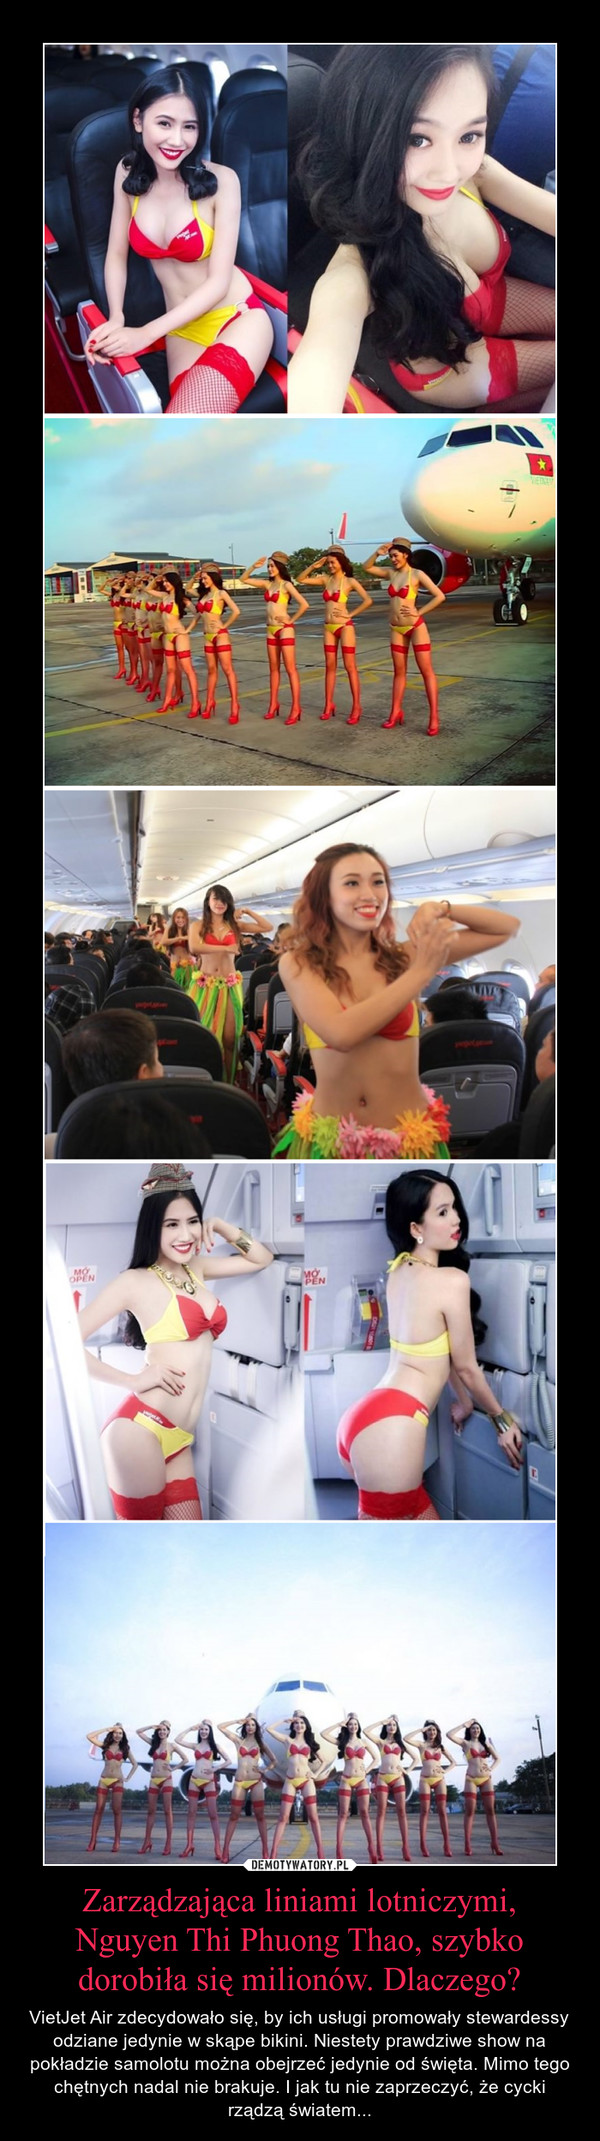 Zarządzająca liniami lotniczymi, Nguyen Thi Phuong Thao, szybko dorobiła się milionów. Dlaczego? – VietJet Air zdecydowało się, by ich usługi promowały stewardessy odziane jedynie w skąpe bikini. Niestety prawdziwe show na pokładzie samolotu można obejrzeć jedynie od święta. Mimo tego chętnych nadal nie brakuje. I jak tu nie zaprzeczyć, że cycki rządzą światem... 